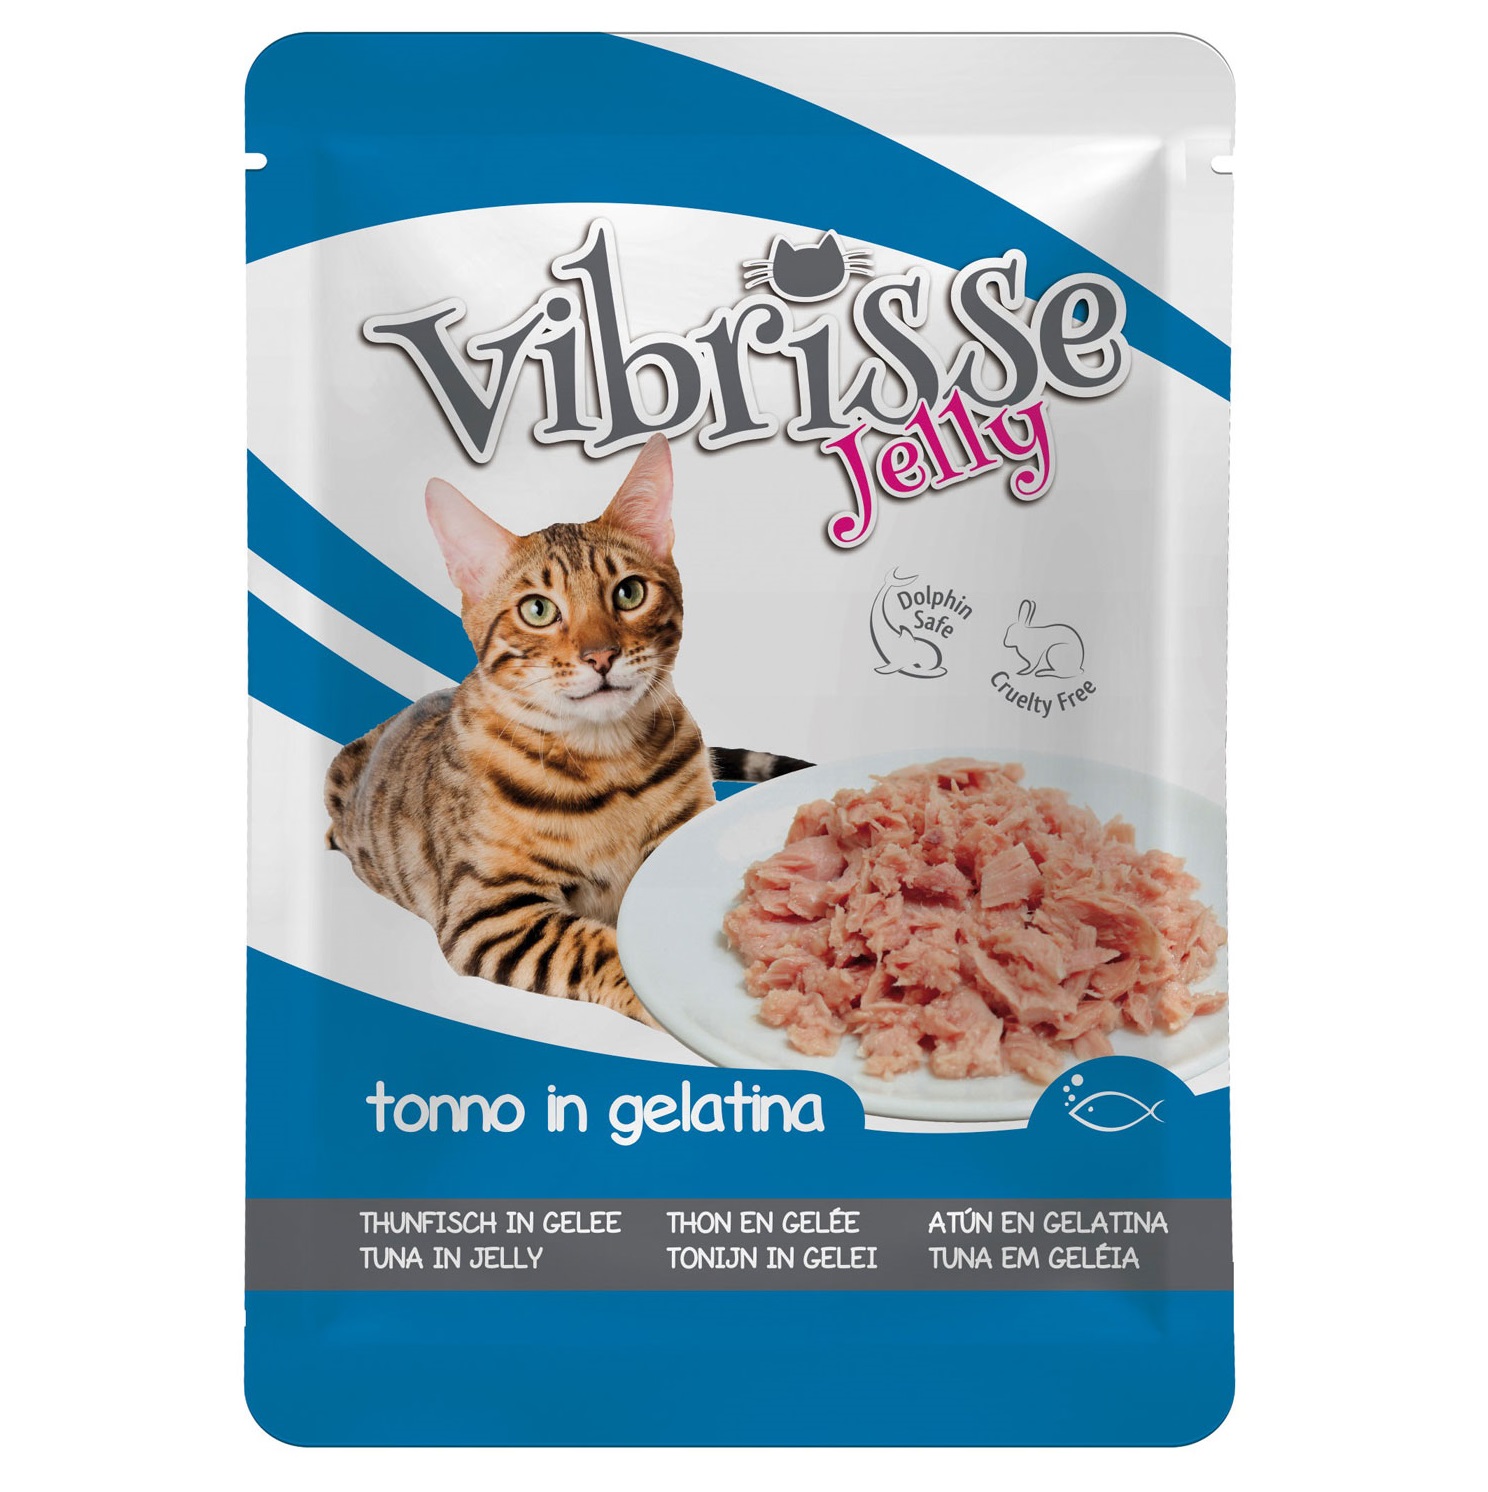 Влажный корм для кошек Vibrisse Jelly, с тунцом в желе, 70 г (C1018985) - фото 1